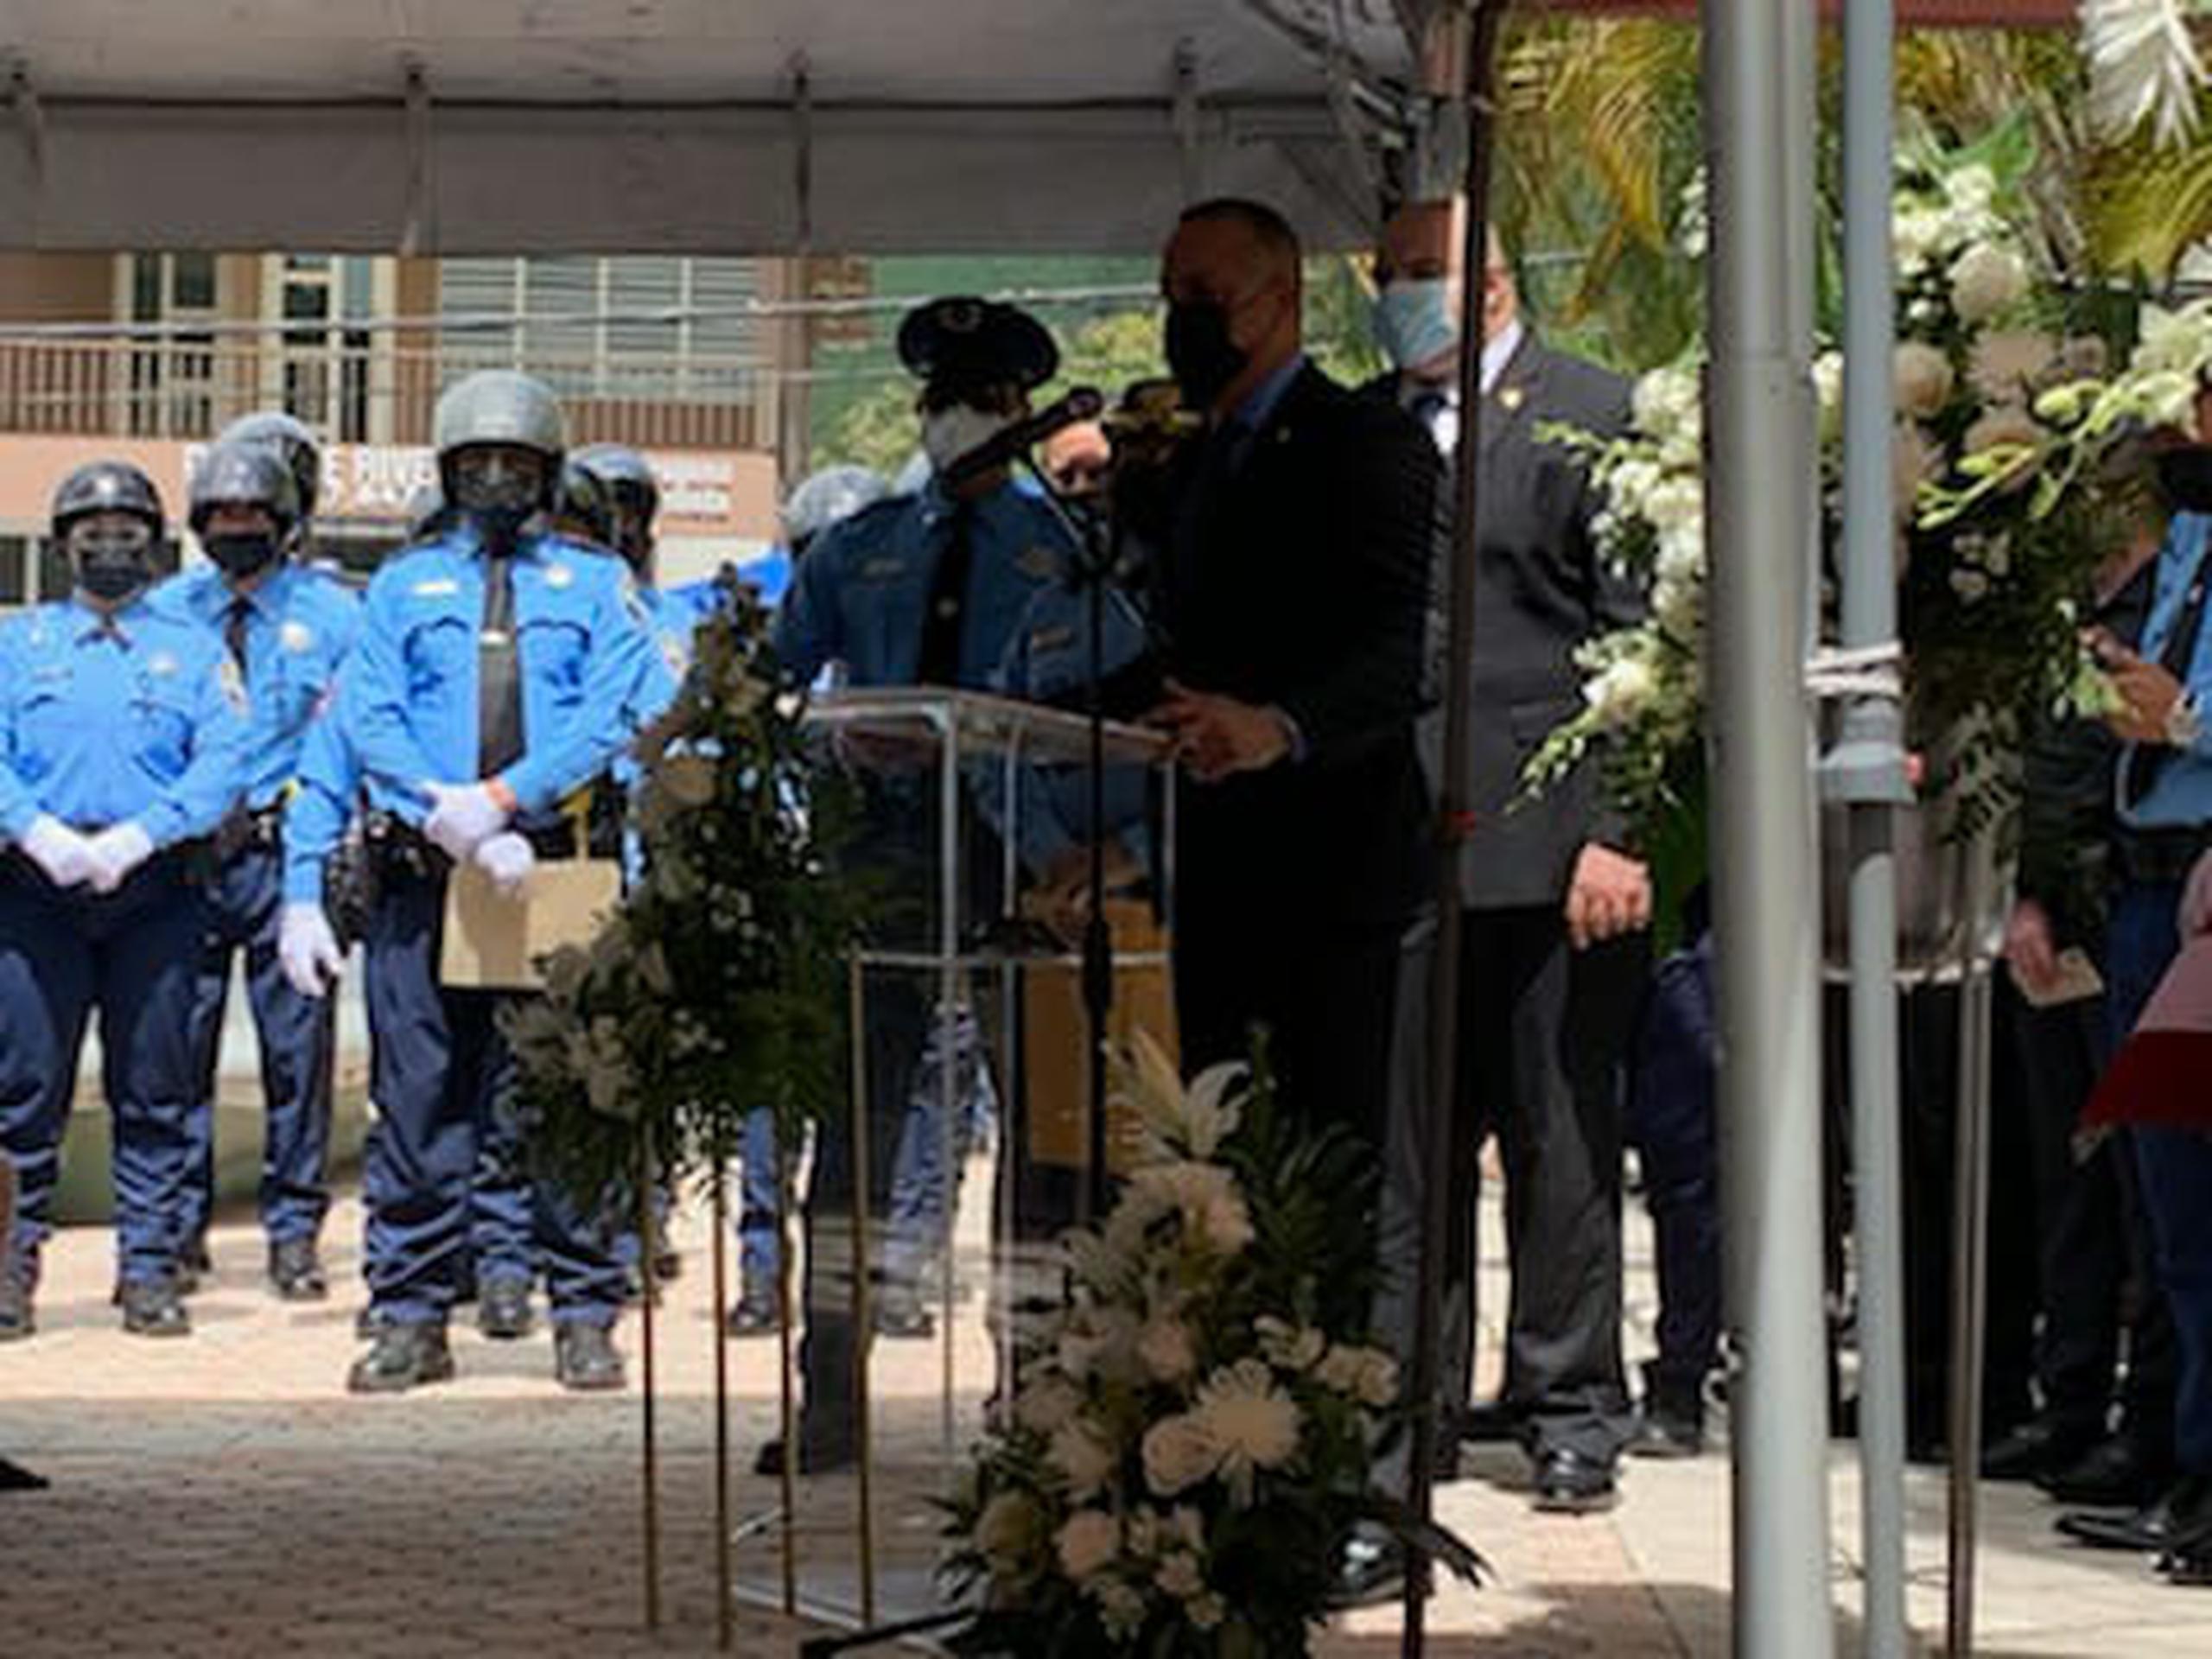 El agente Erasmo García Torres, adscrito a la Unidad Motorizada de Ponce, fue ascendido al rango de sargento póstumamente, tras ser asesinado en el cumplimiento del deber.